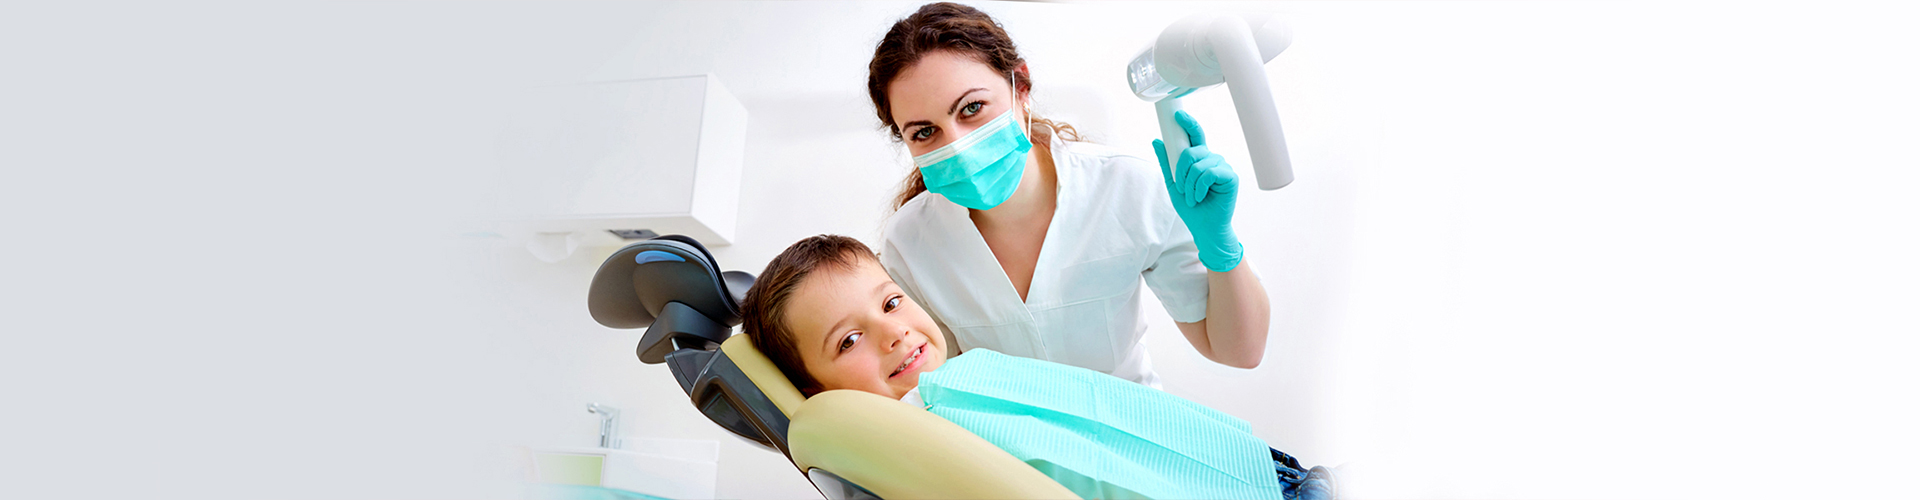 Sedation Dentistry for Children